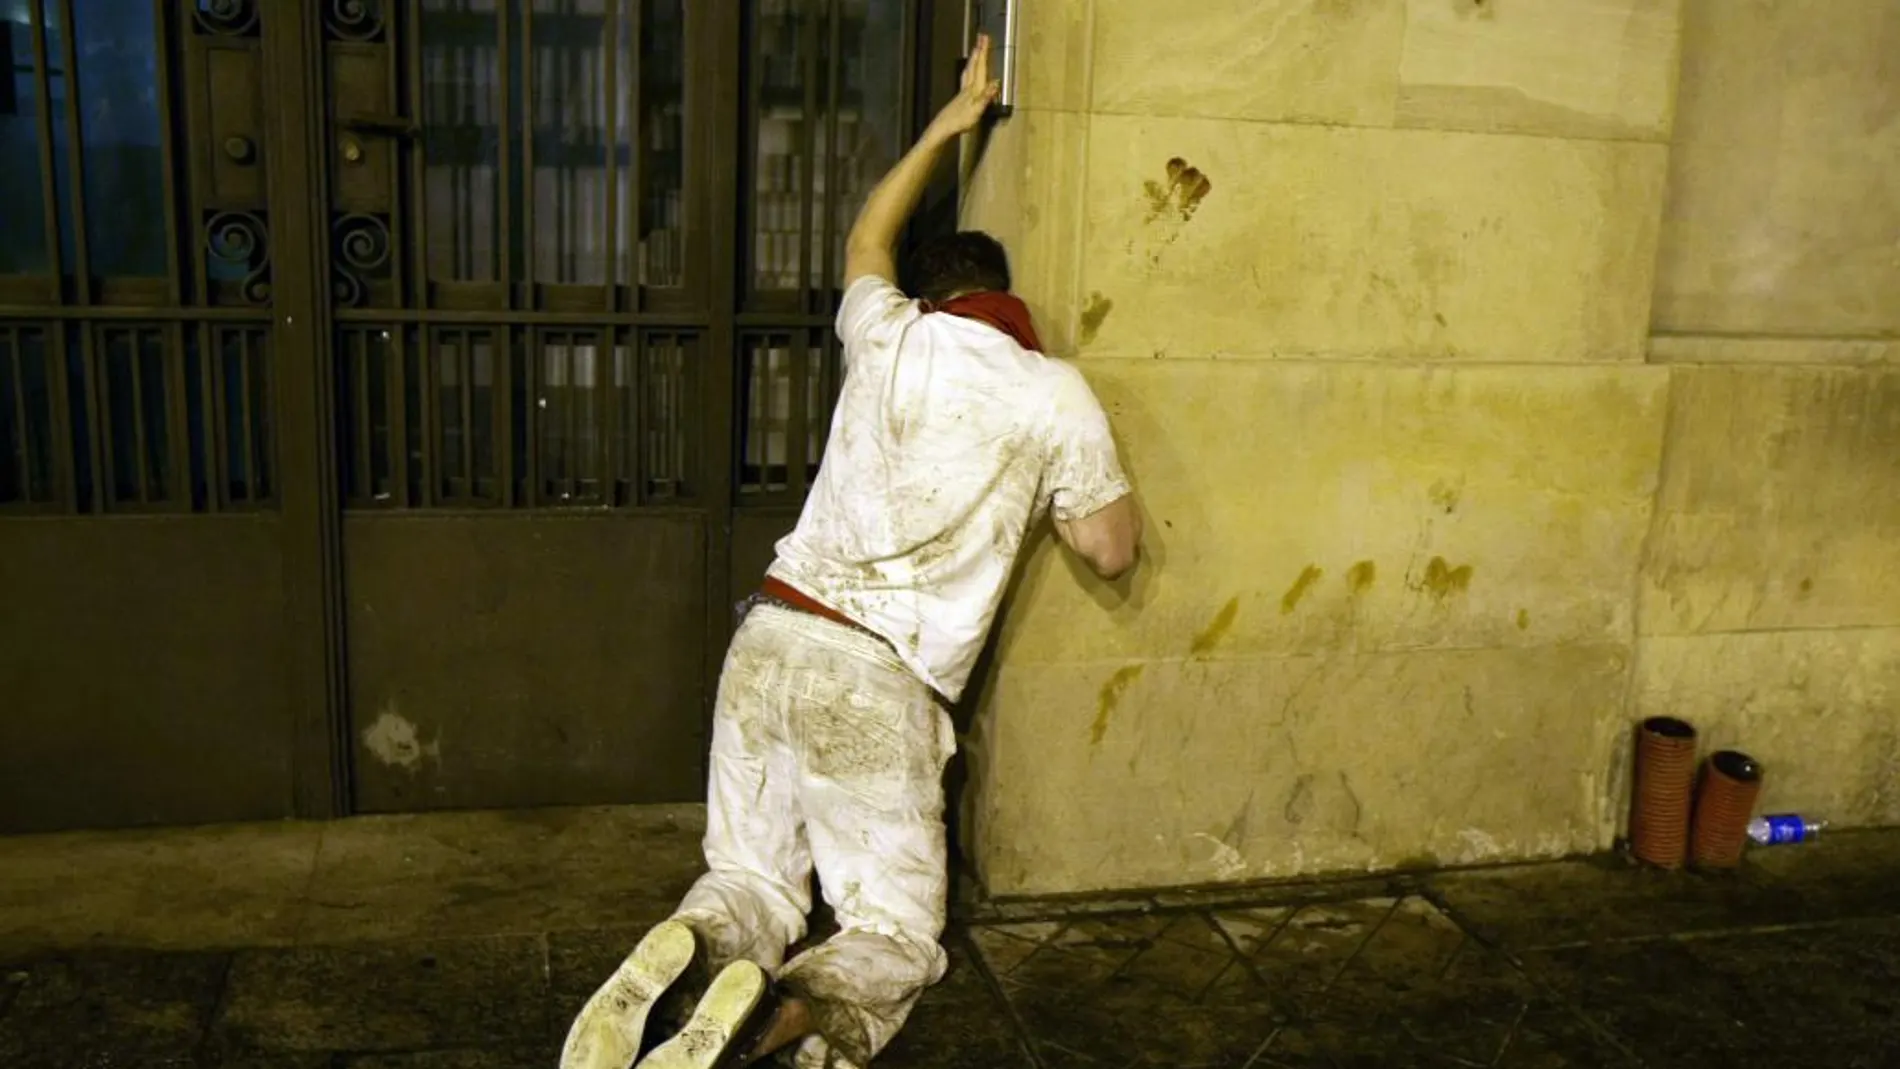 Un joven vuelve a duras penas a su casa en las fiiestas de San Fermín, en una imagen de archivo